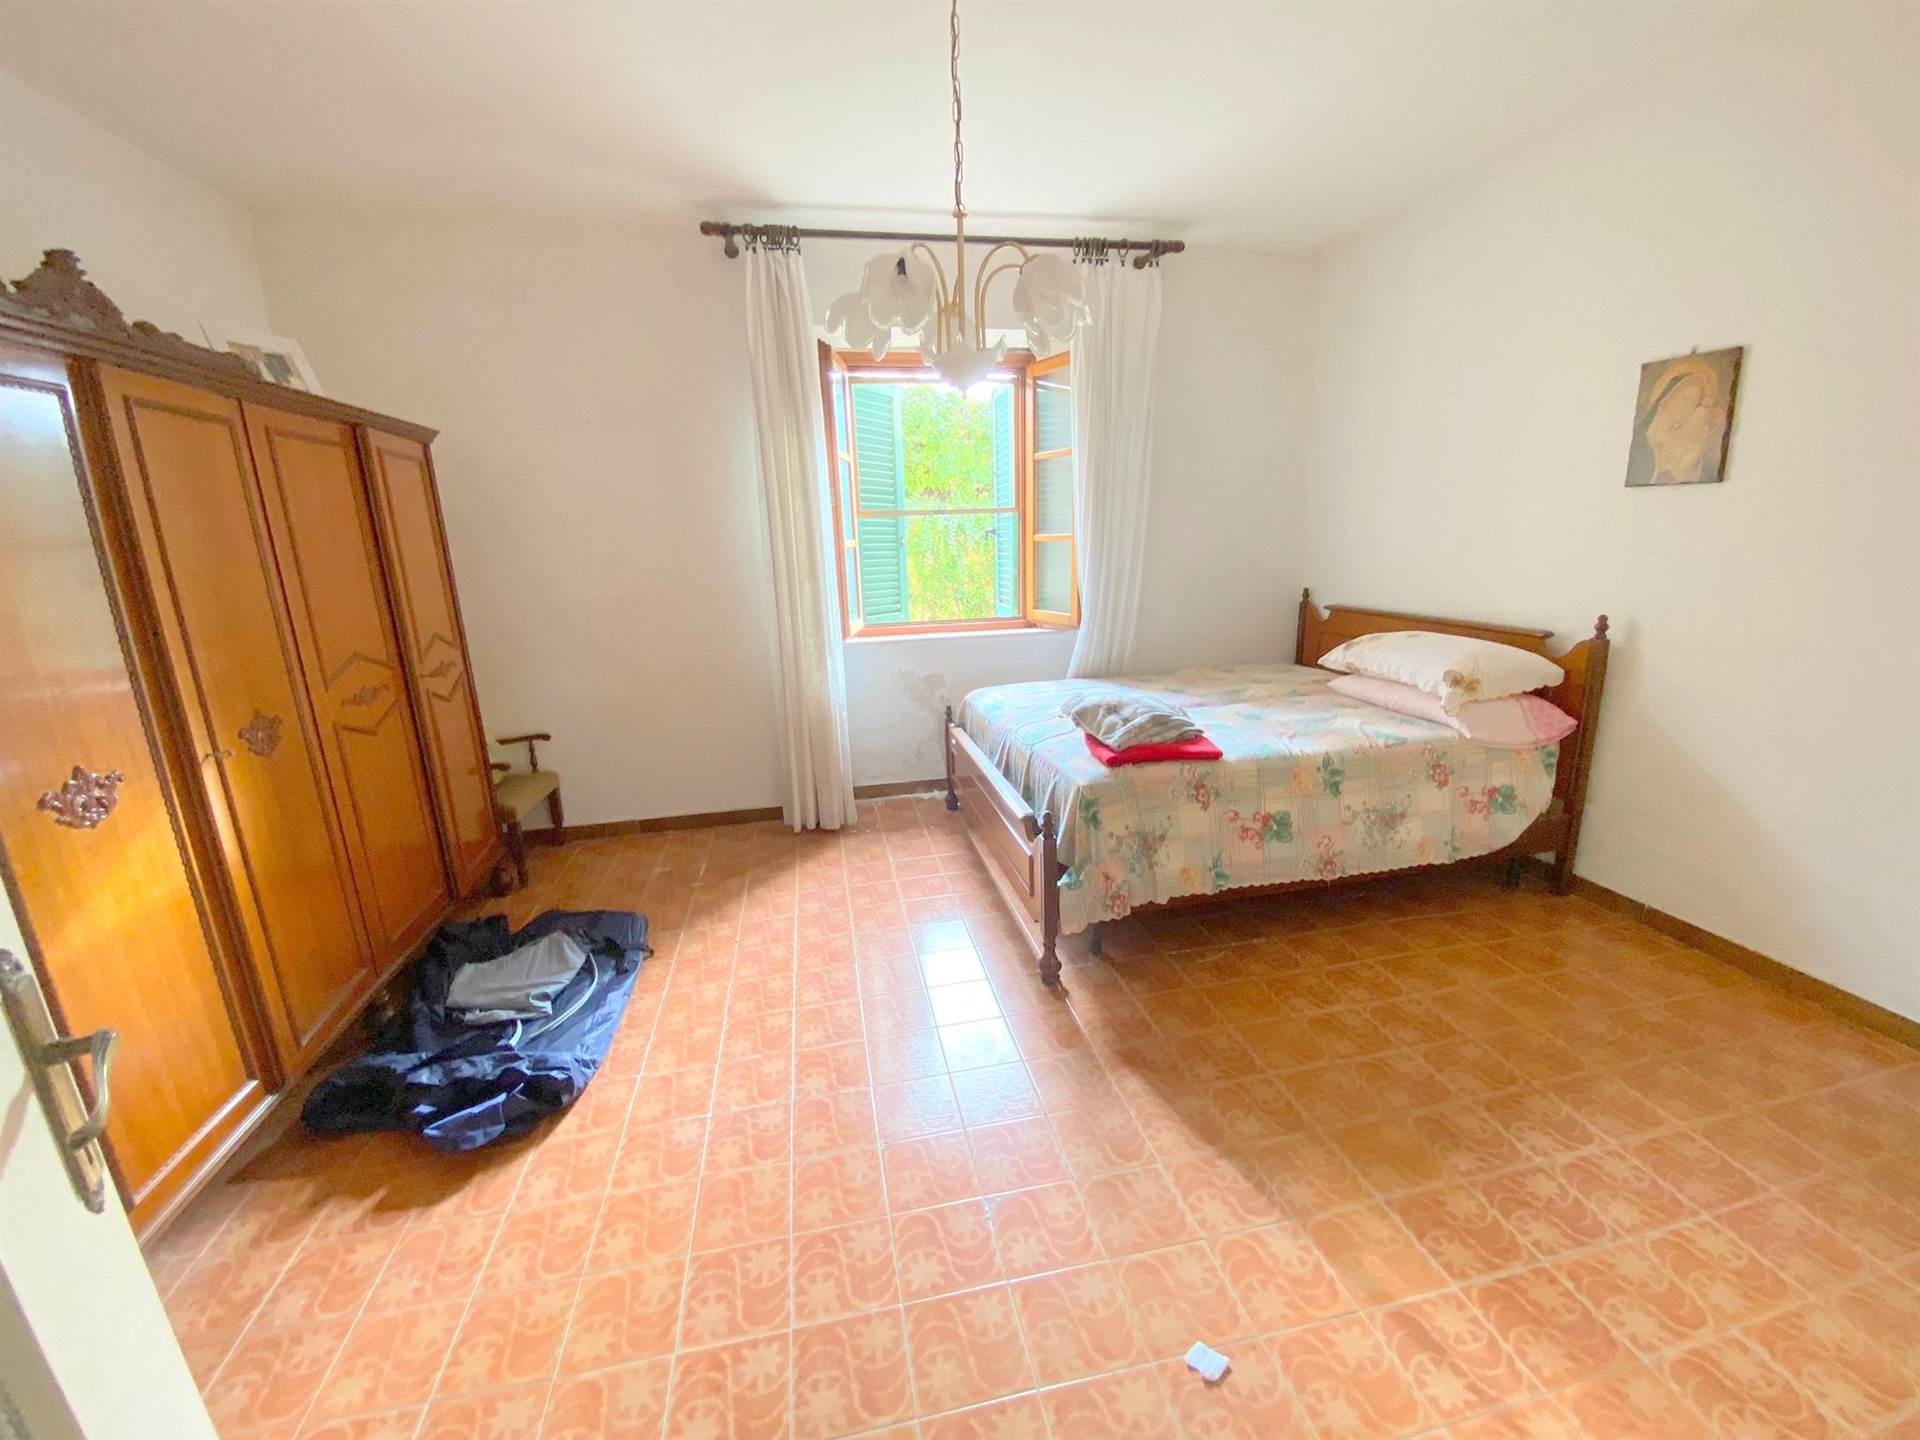 Appartamento in vendita a Orciano Pisano, 7 locali, zona riano, prezzo € 97.000 | PortaleAgenzieImmobiliari.it